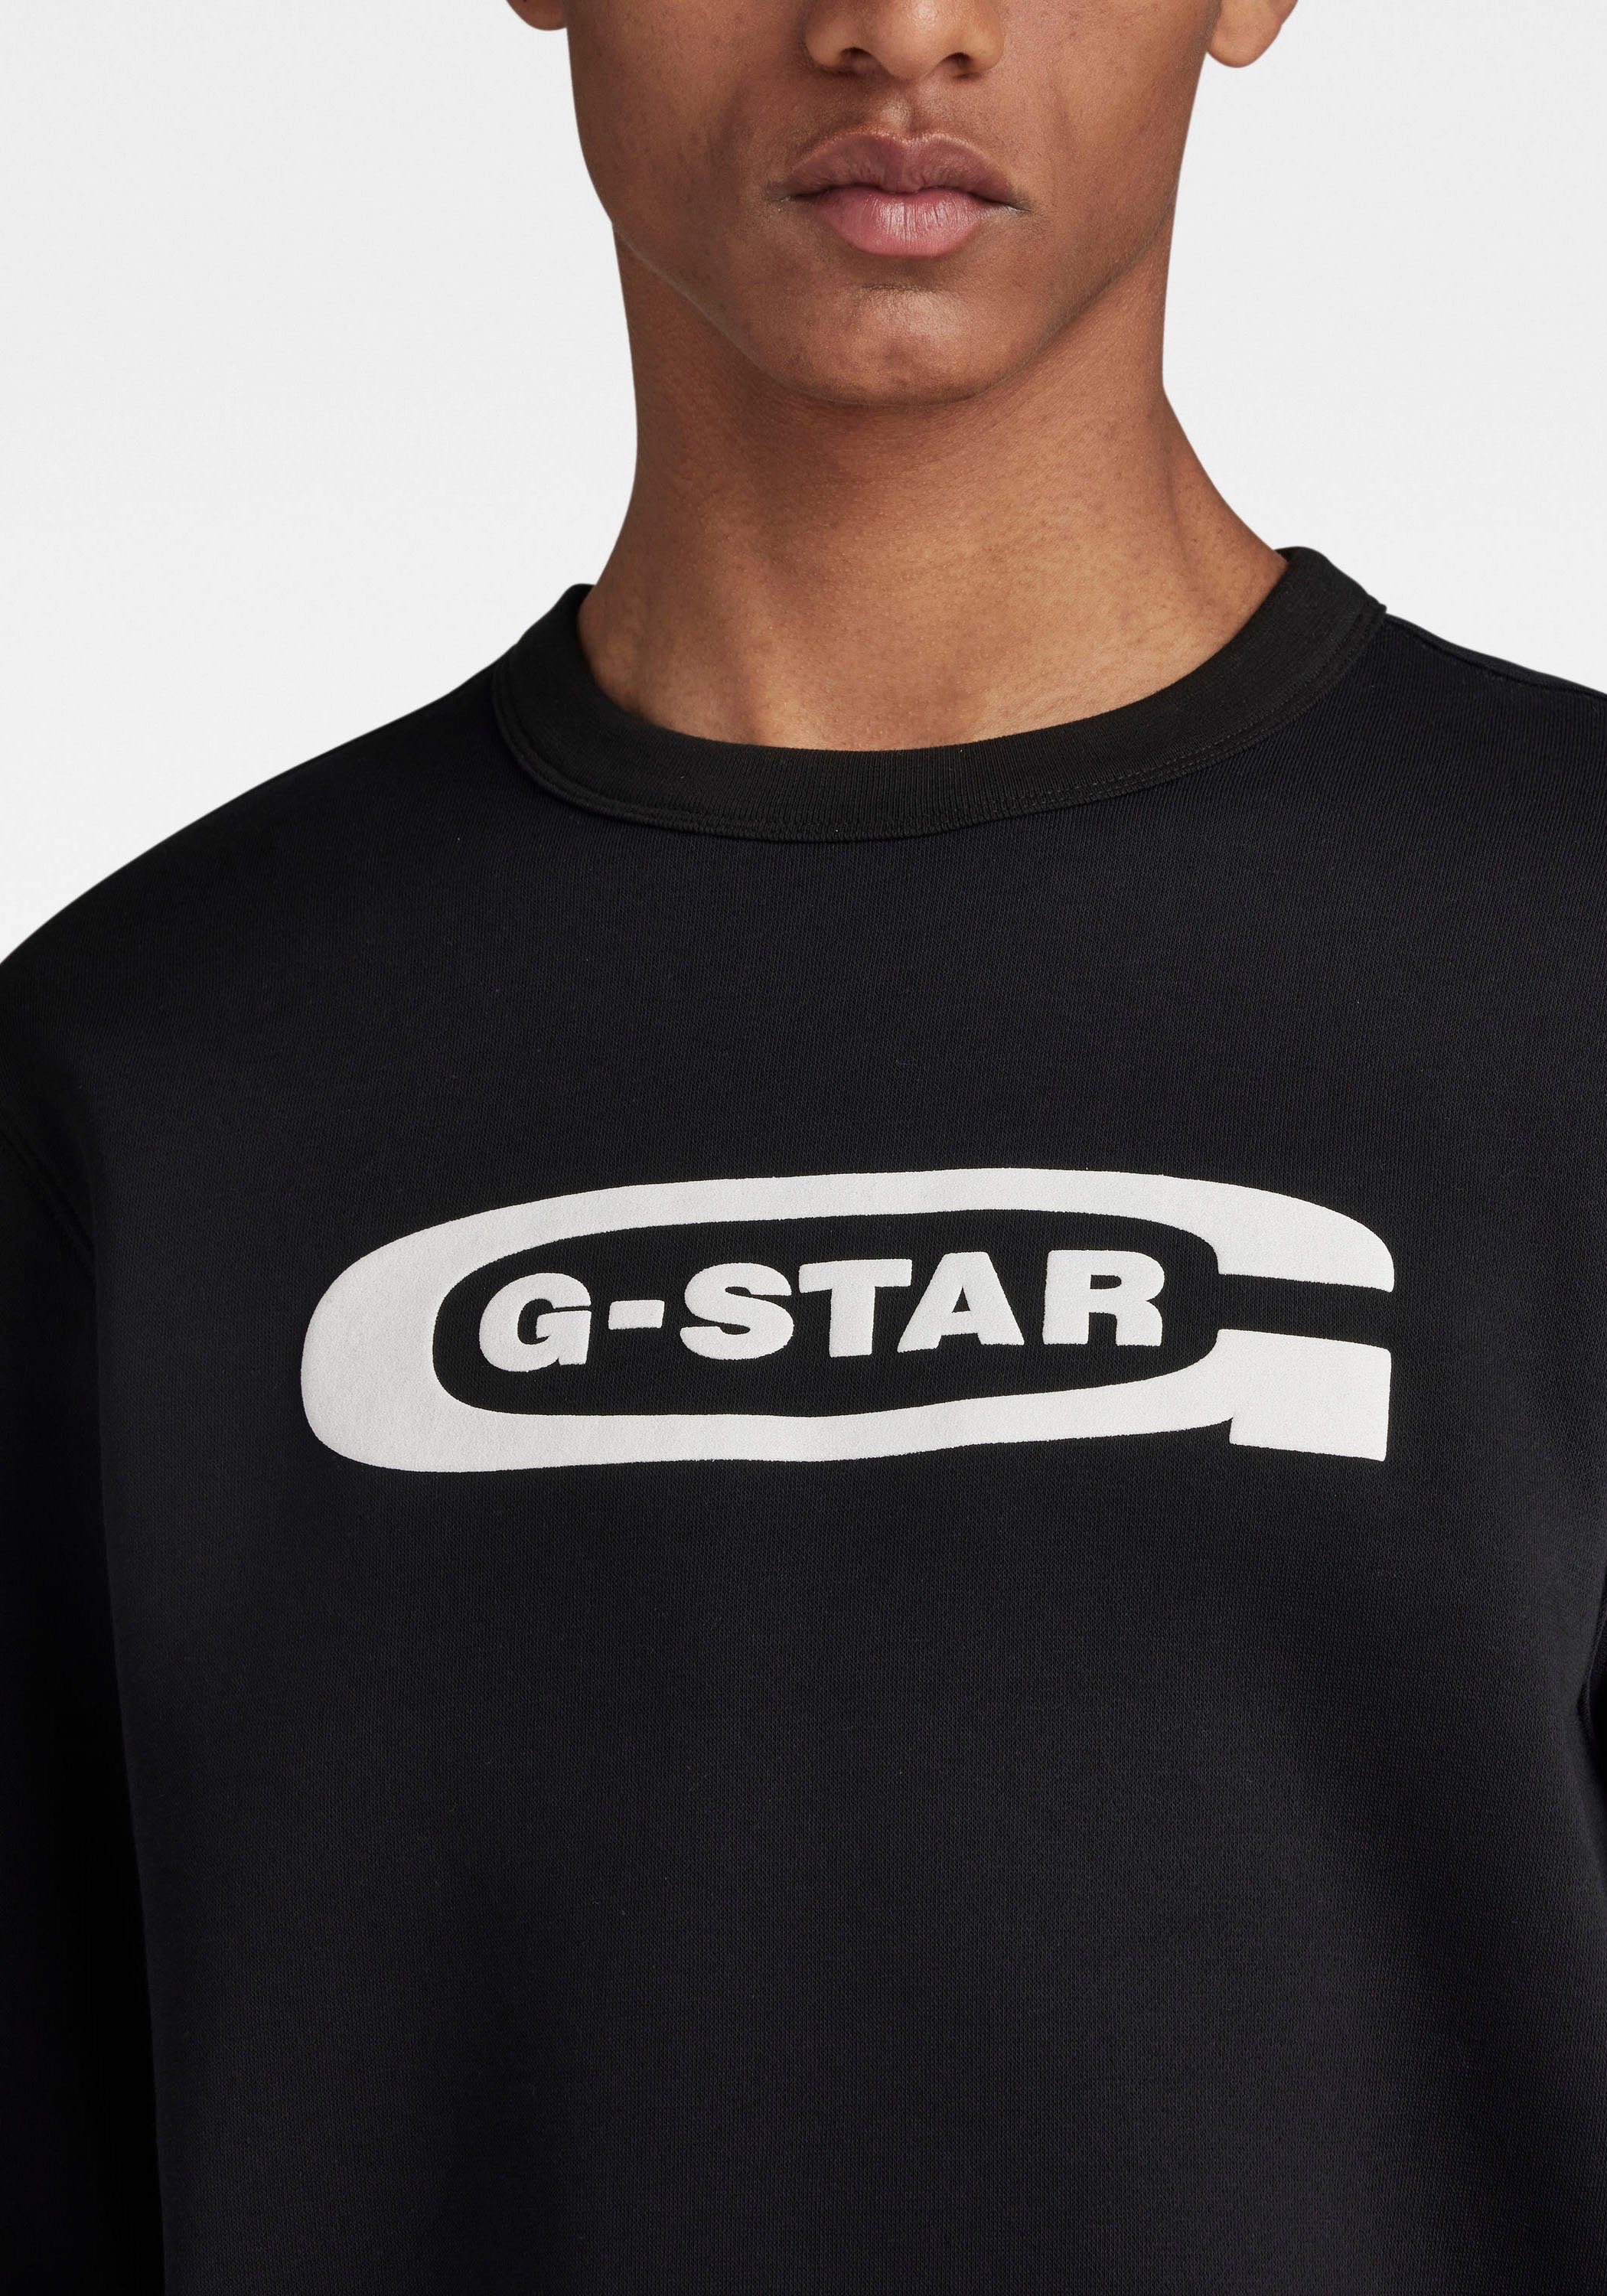 G-Star RAW dk sw Old black logo Sweatshirt r school